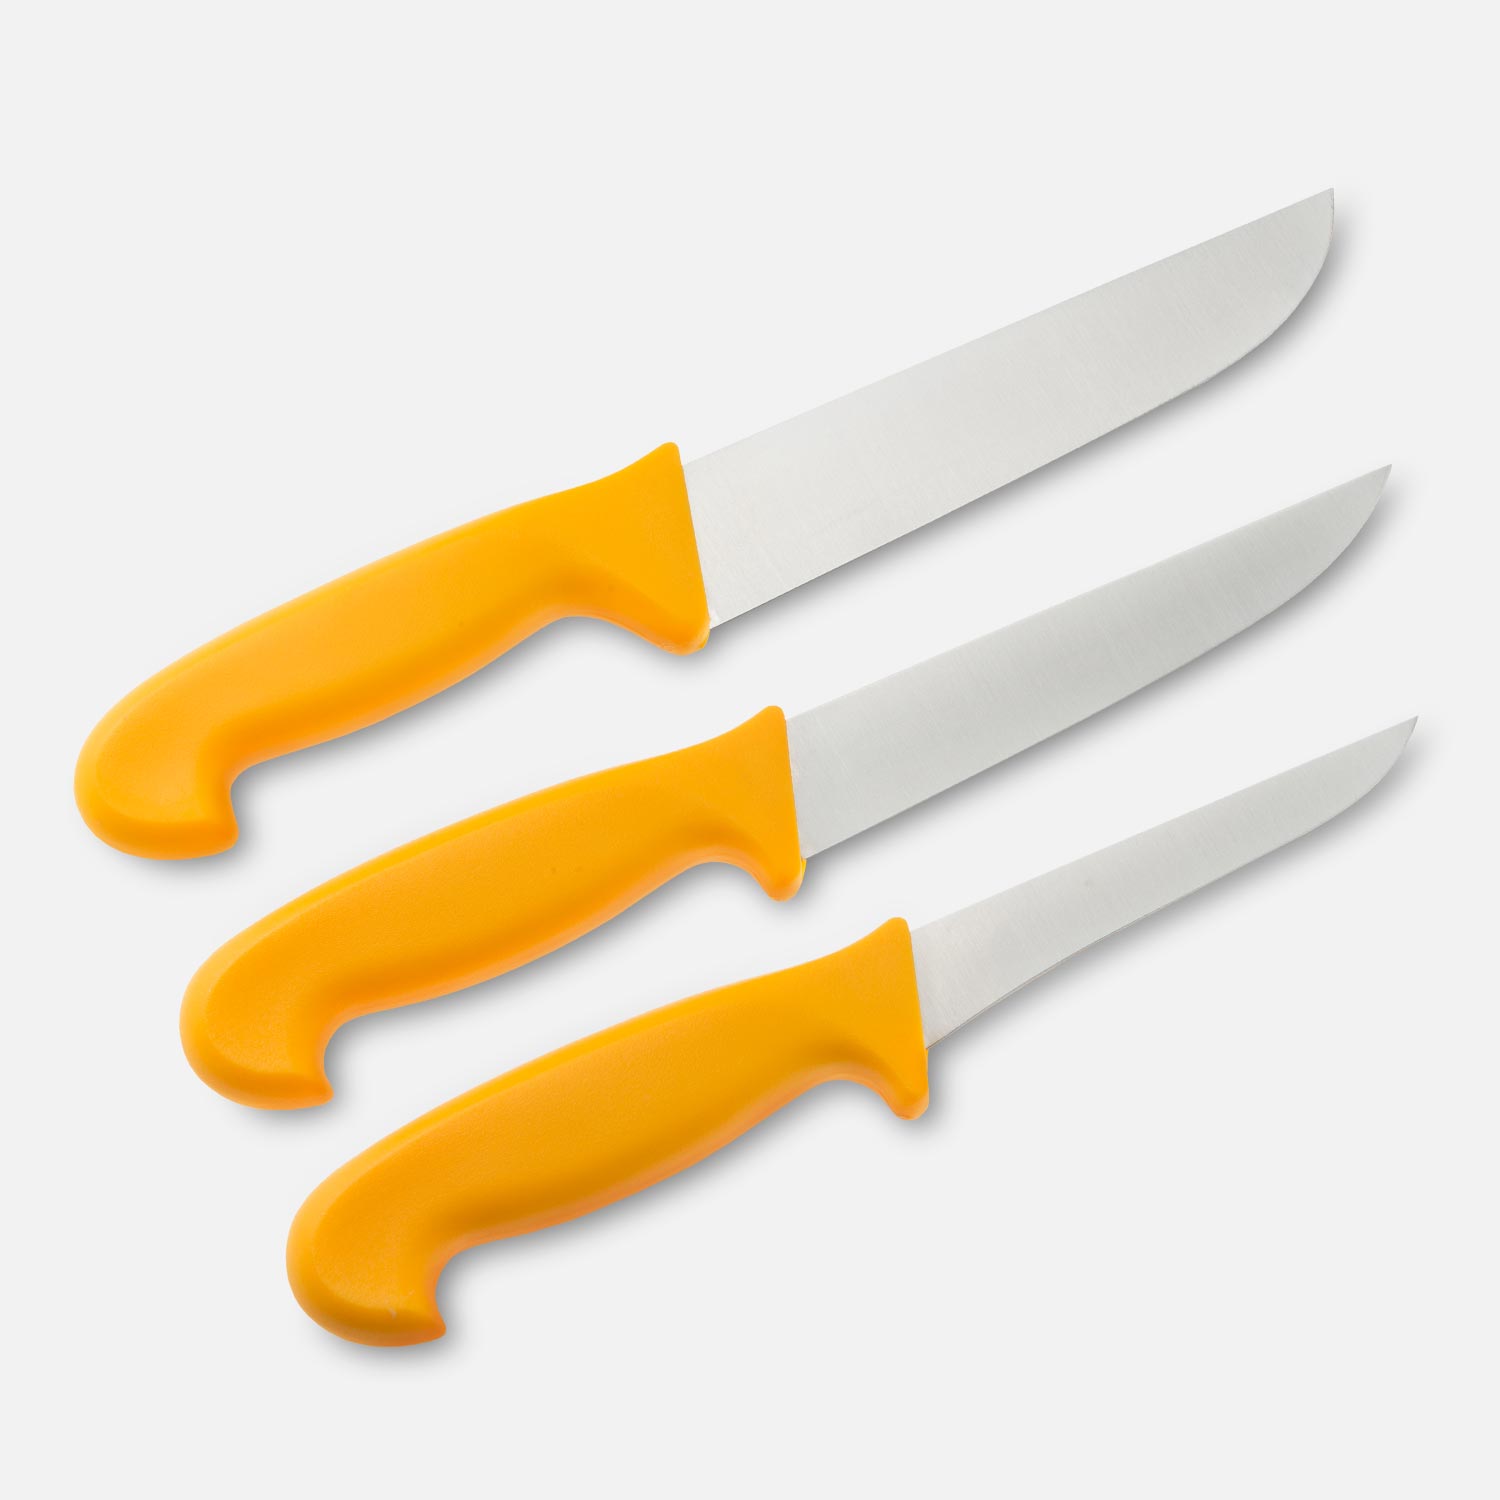 Fleischer-Messer im 3-teiligen Set mit gelben Griffen